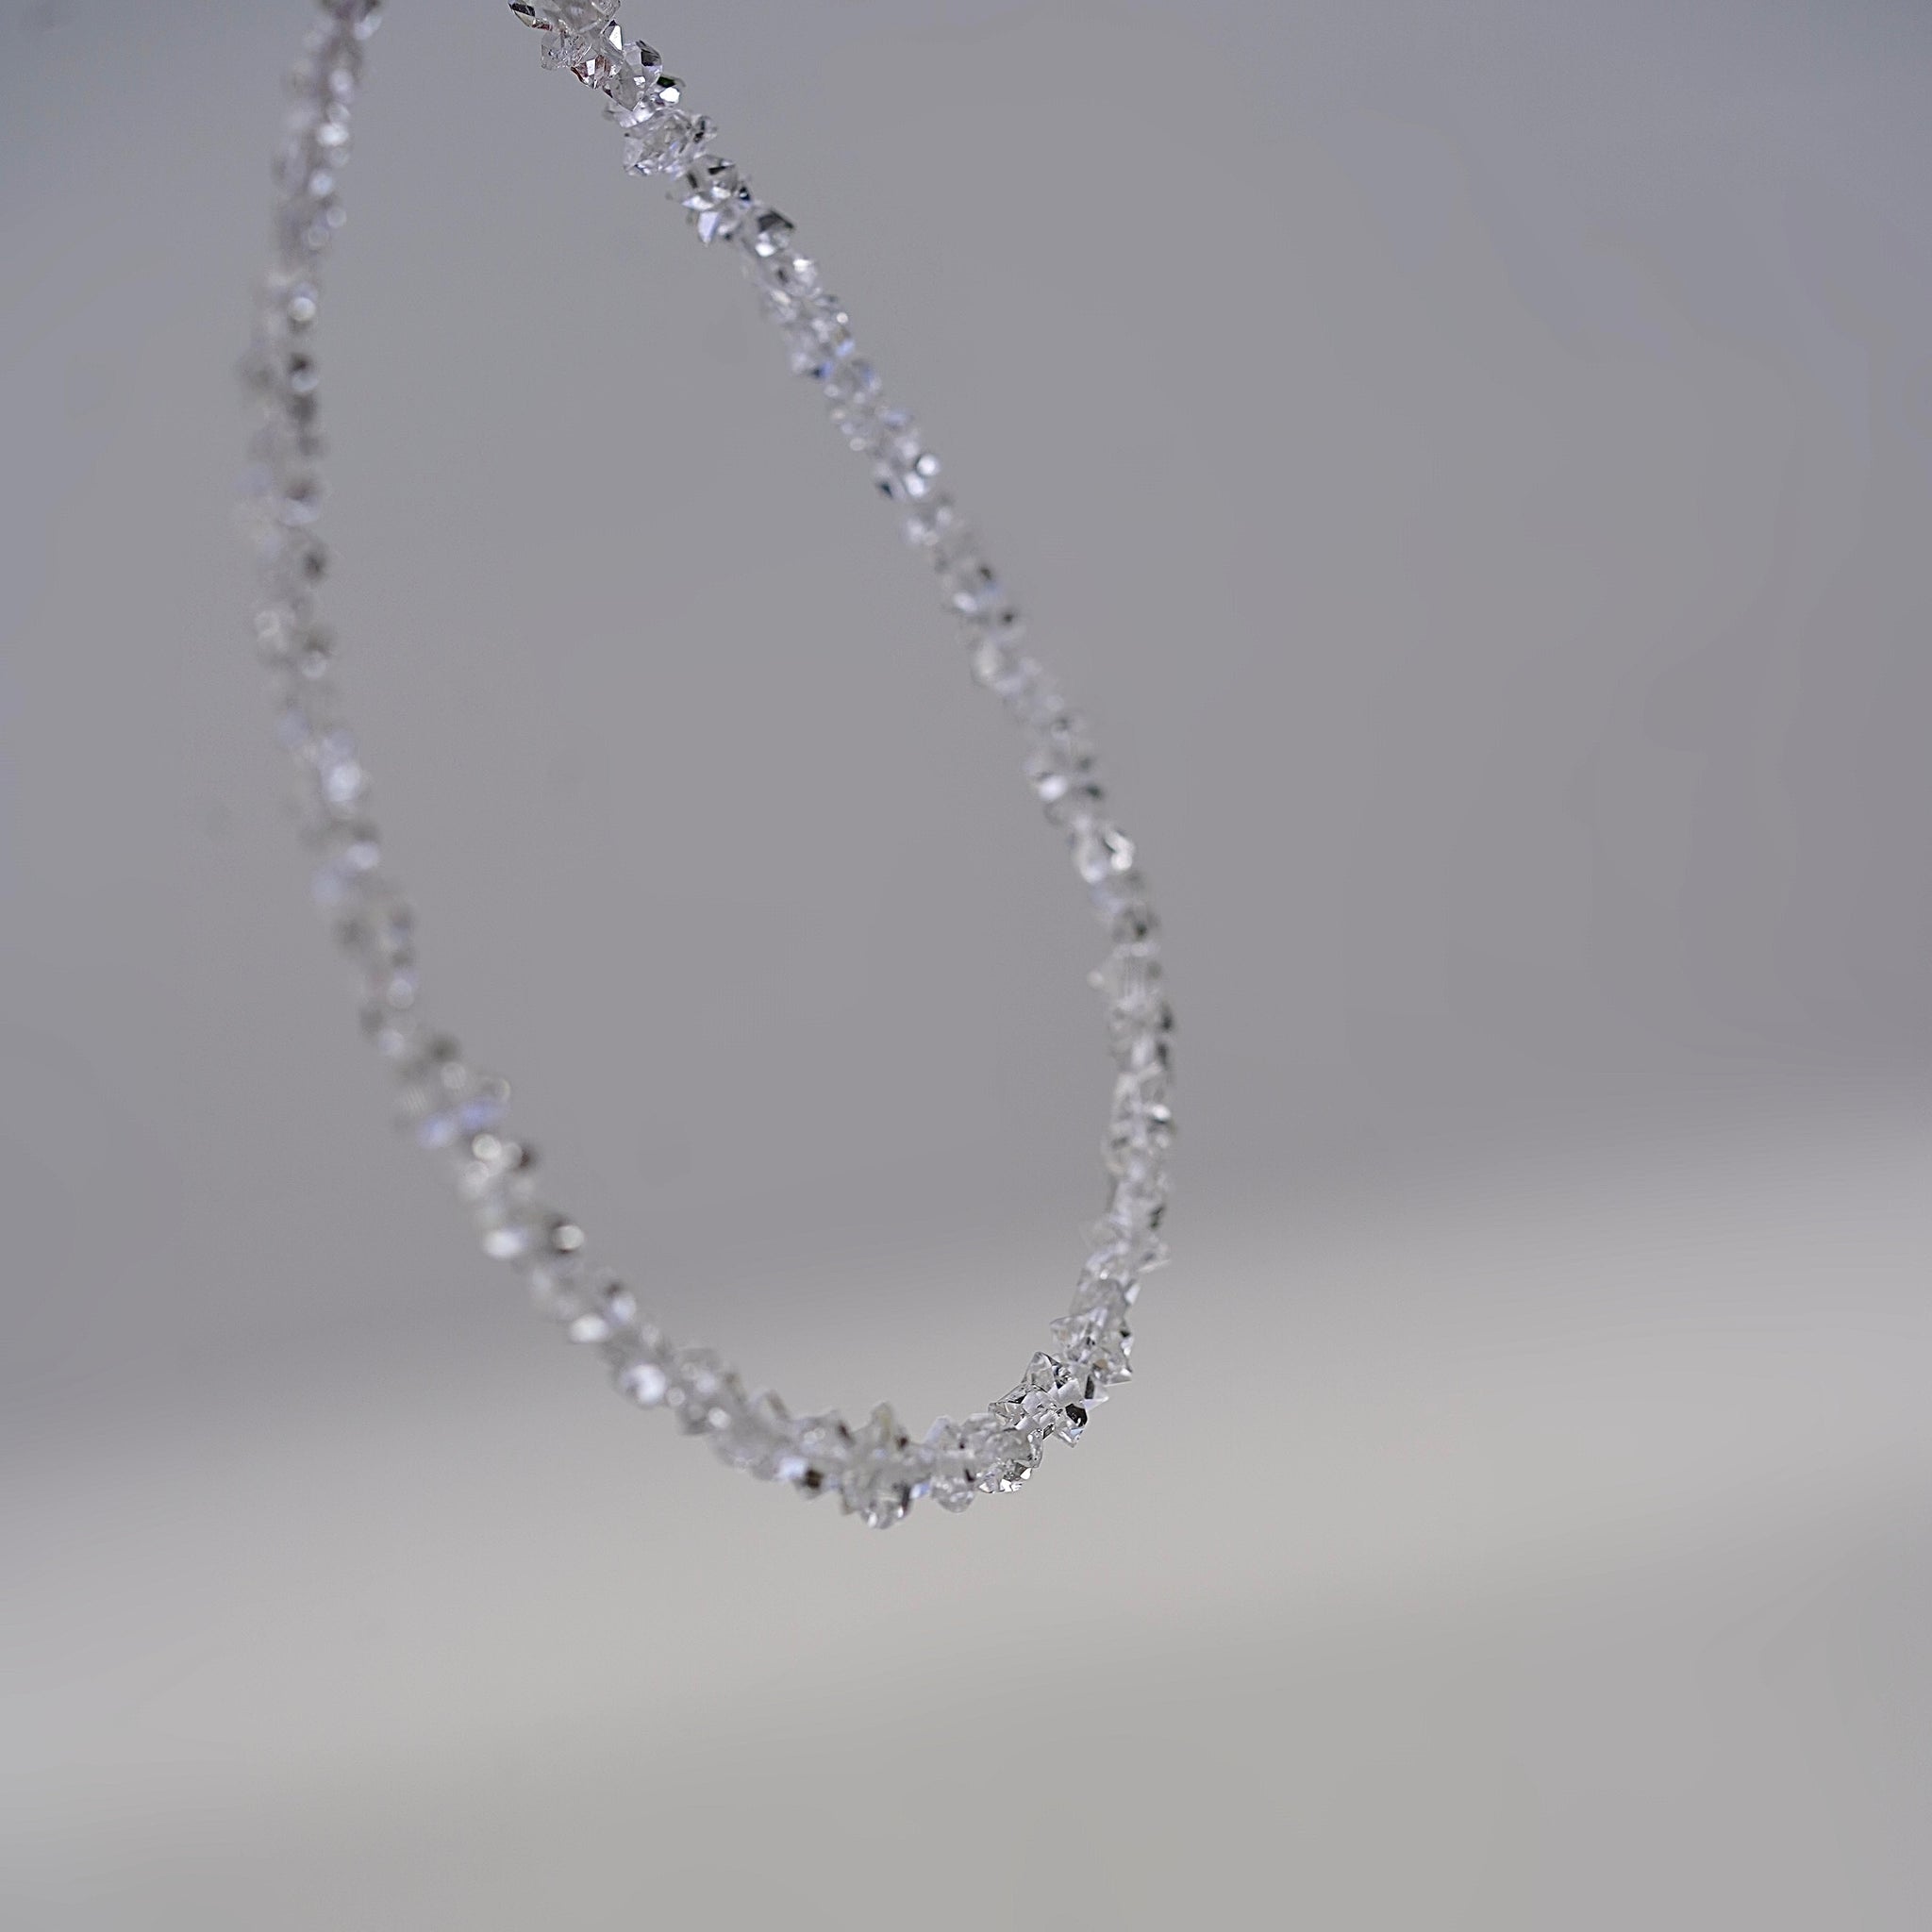 Herkimer Diamond Necklace And Bracelet